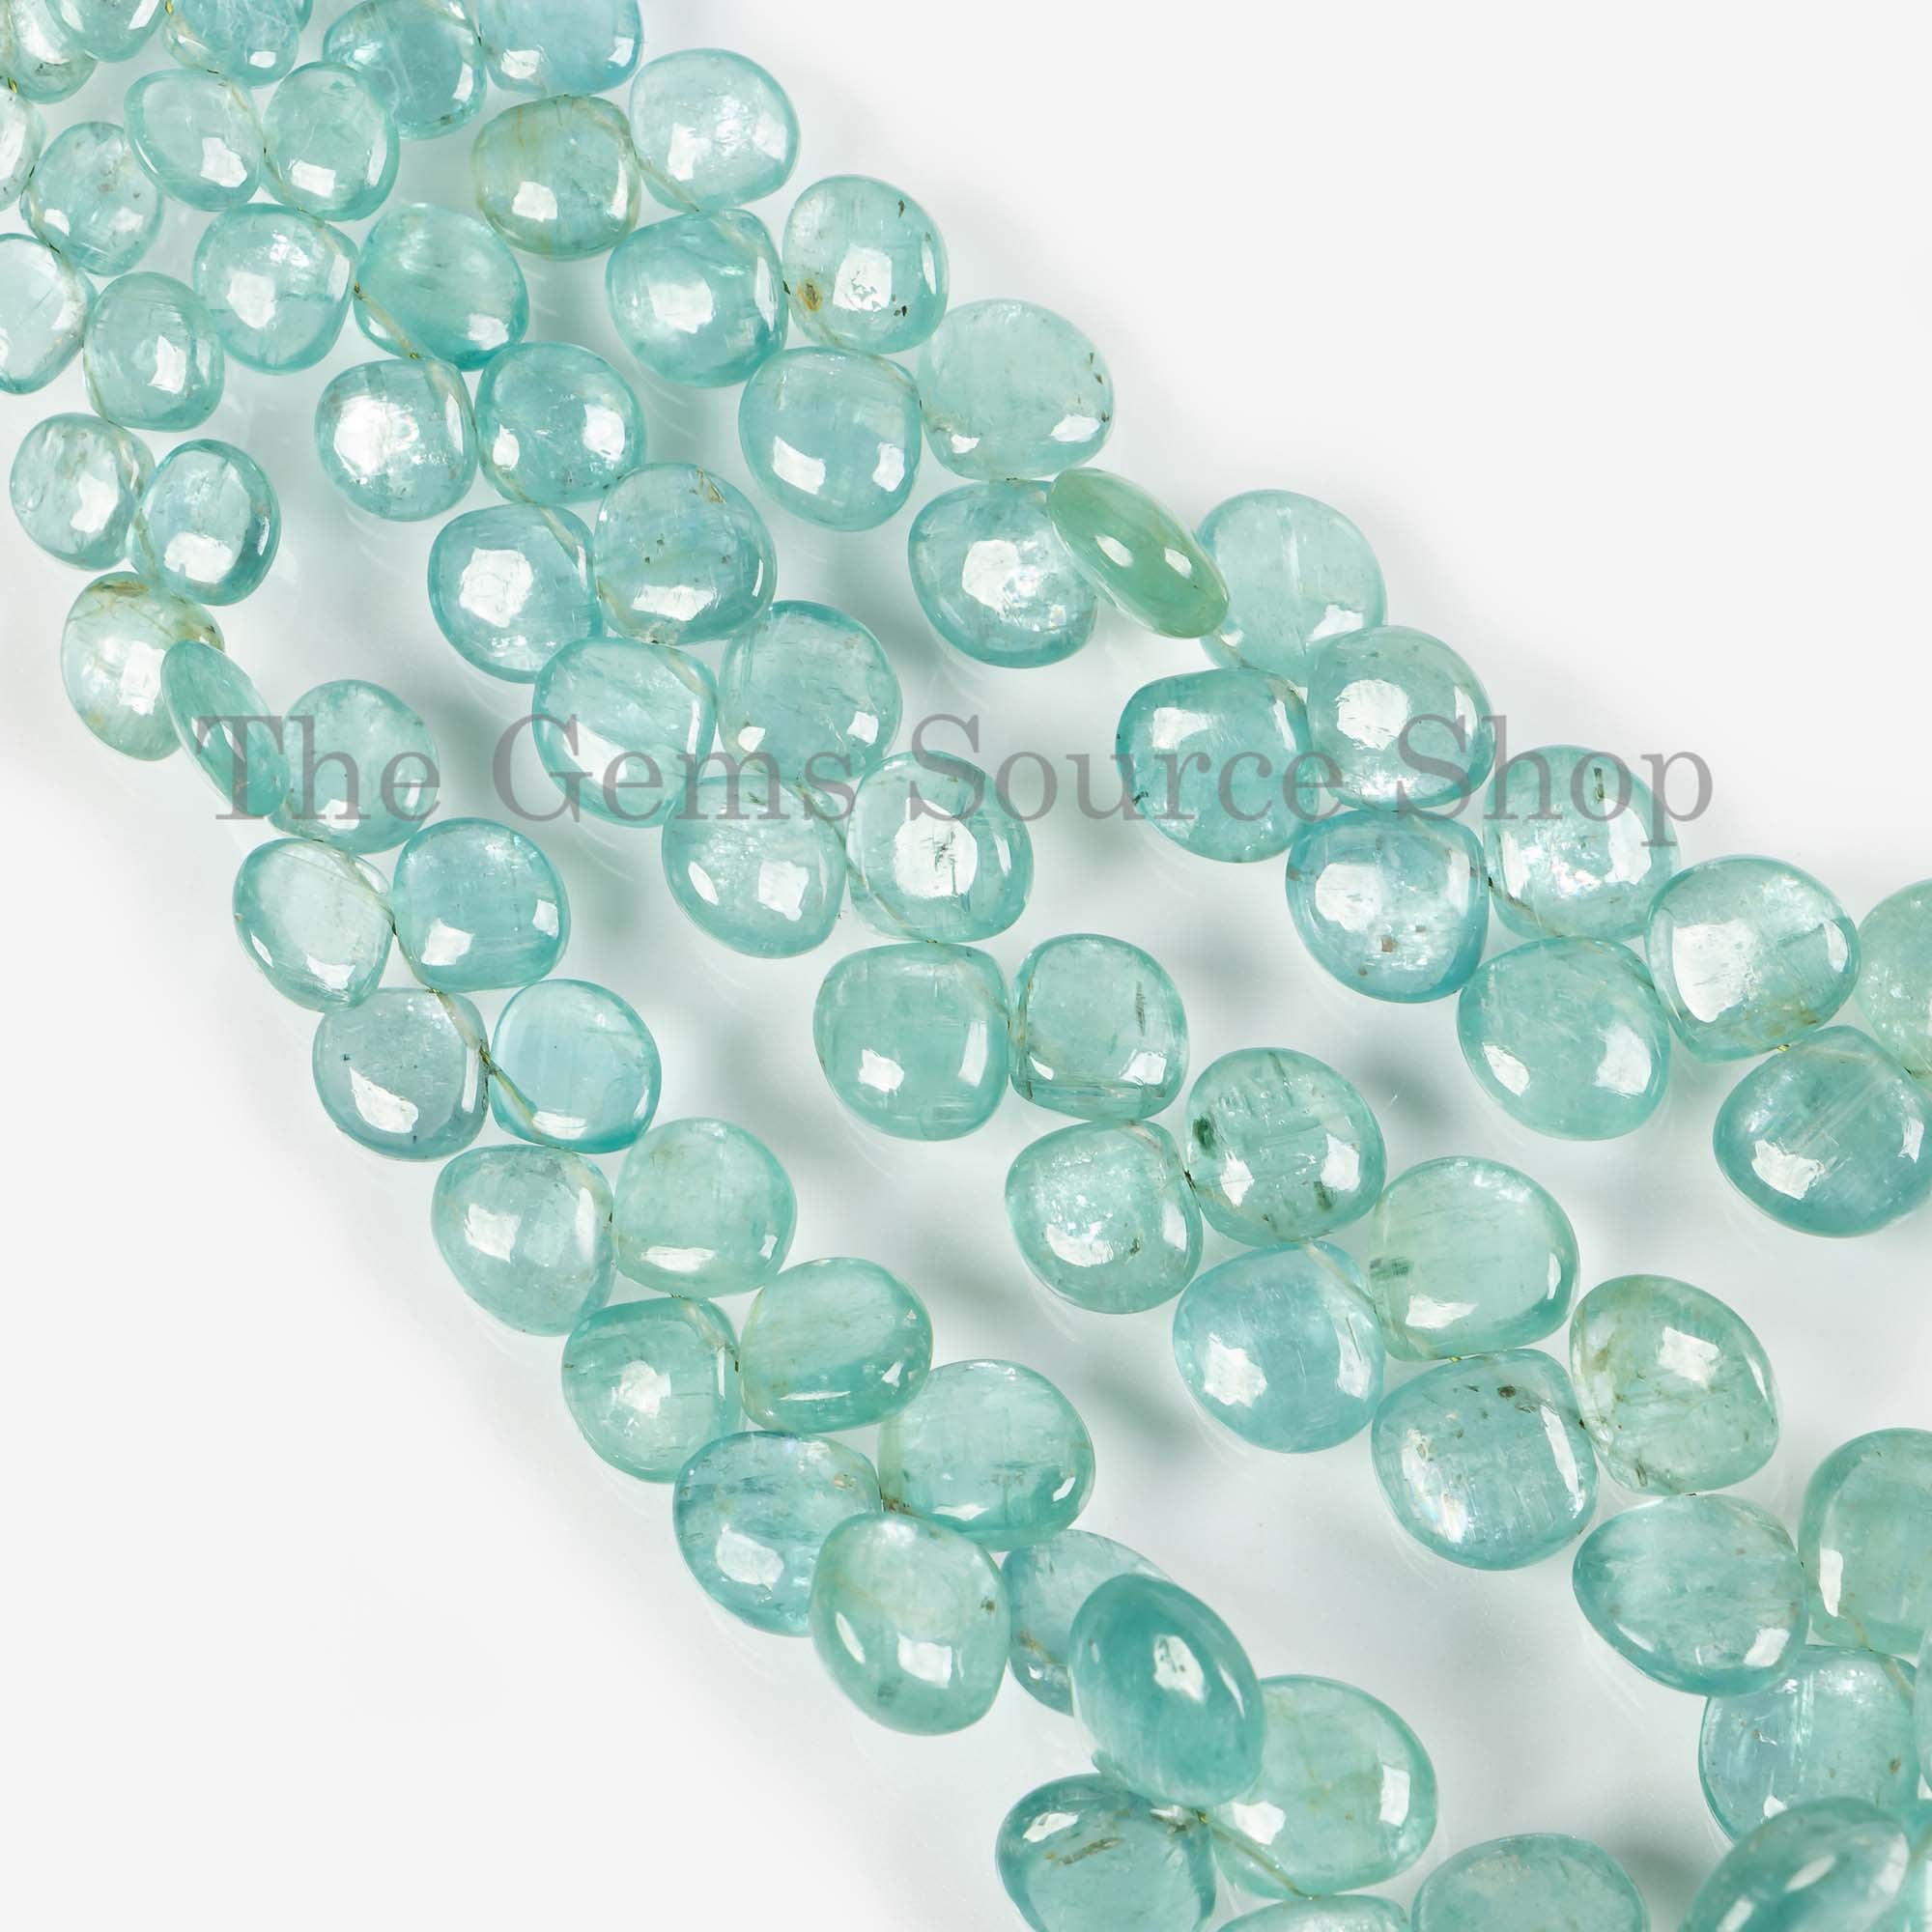 Rare Kyanite Smooth Heart Beads, 5.5-11mm Kyanite Heart Briolette, Smooth Beads, Heart Shape Beads, Kyanite Gemstone, Jewelry Beads